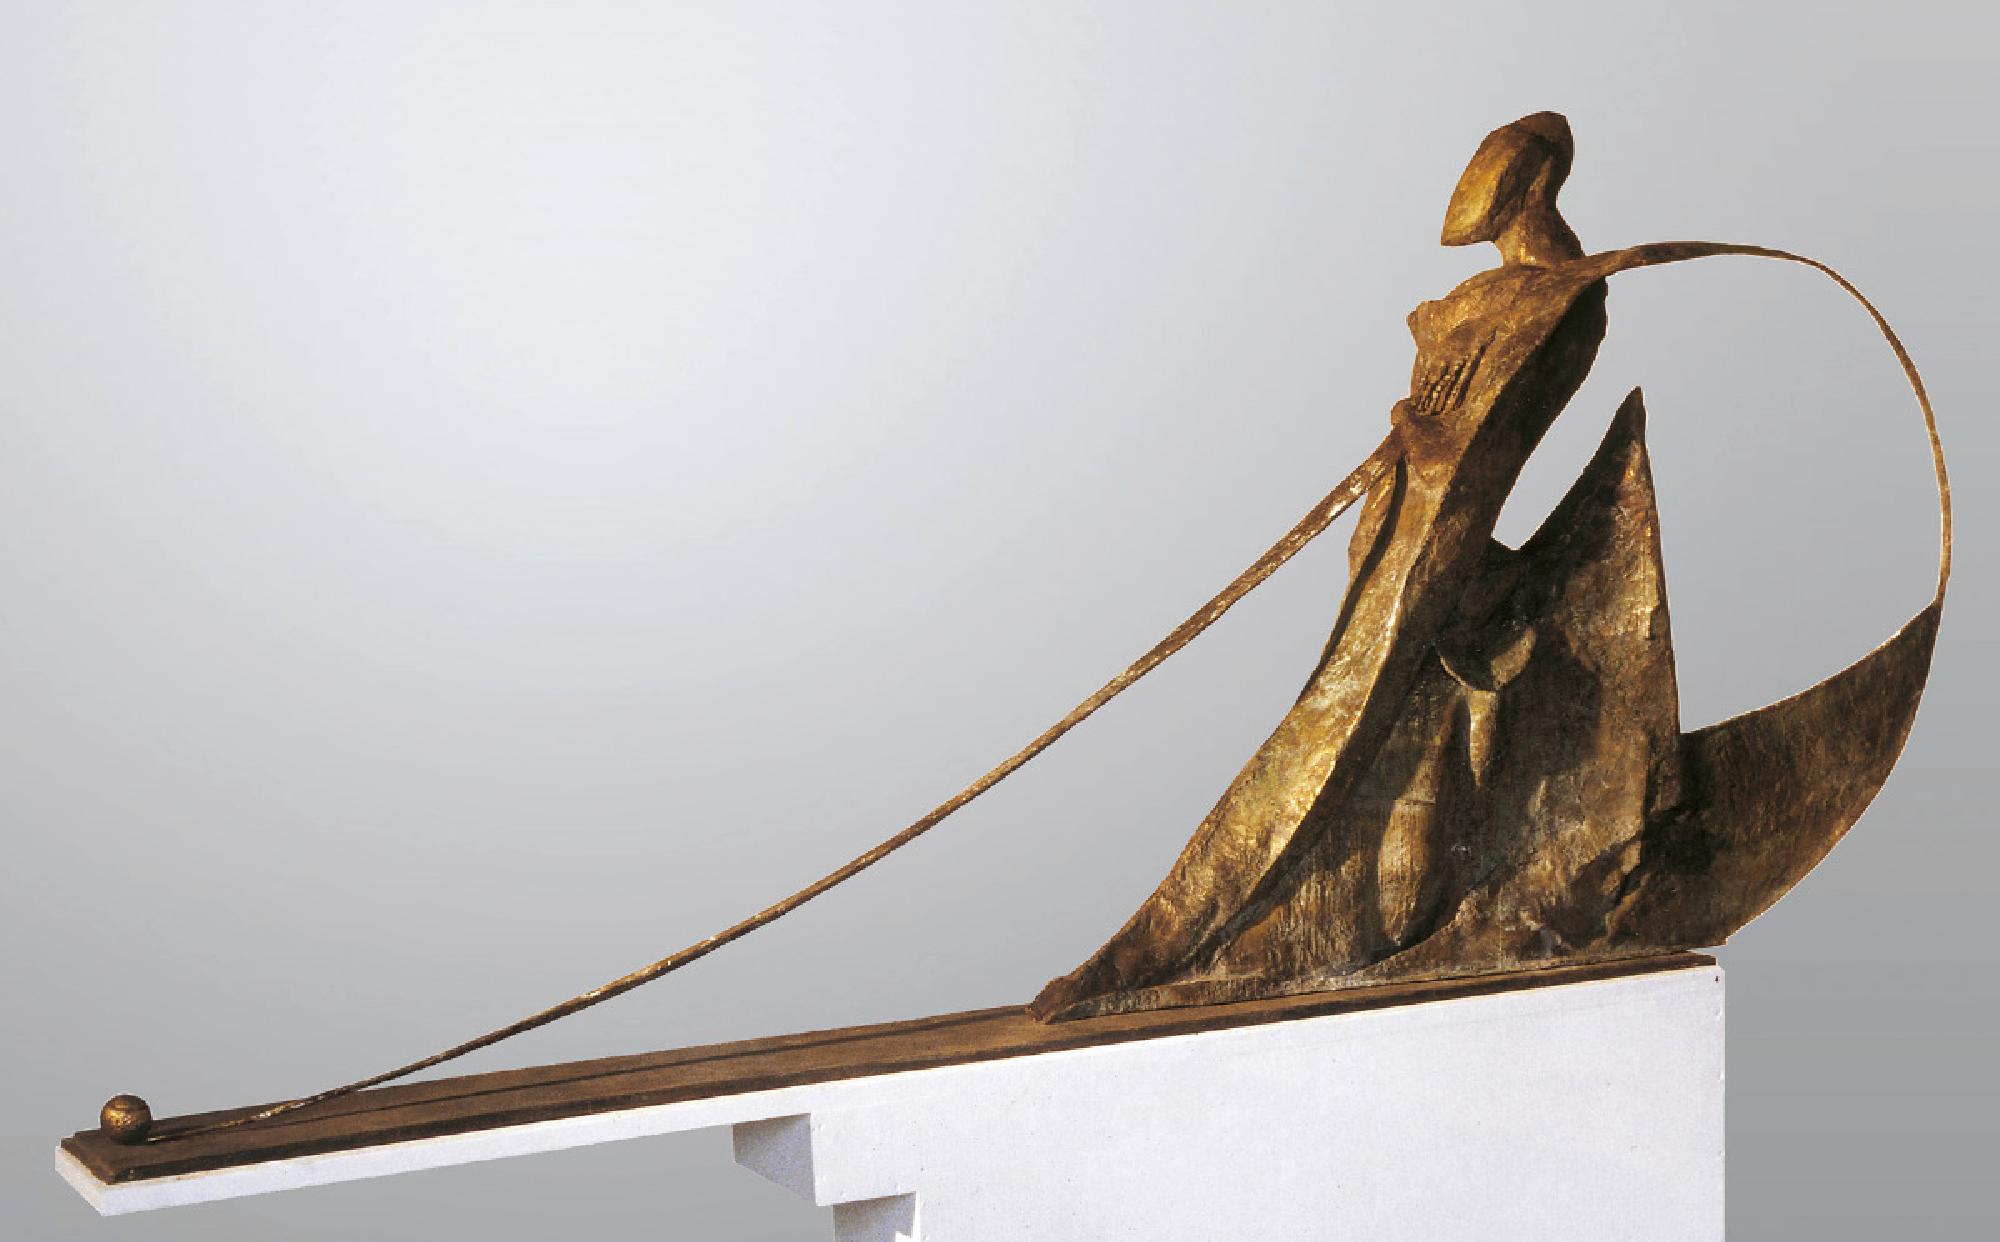 Leonard Lorenz: Focal Point
1999
285 × 135 × 50 cm
bronze